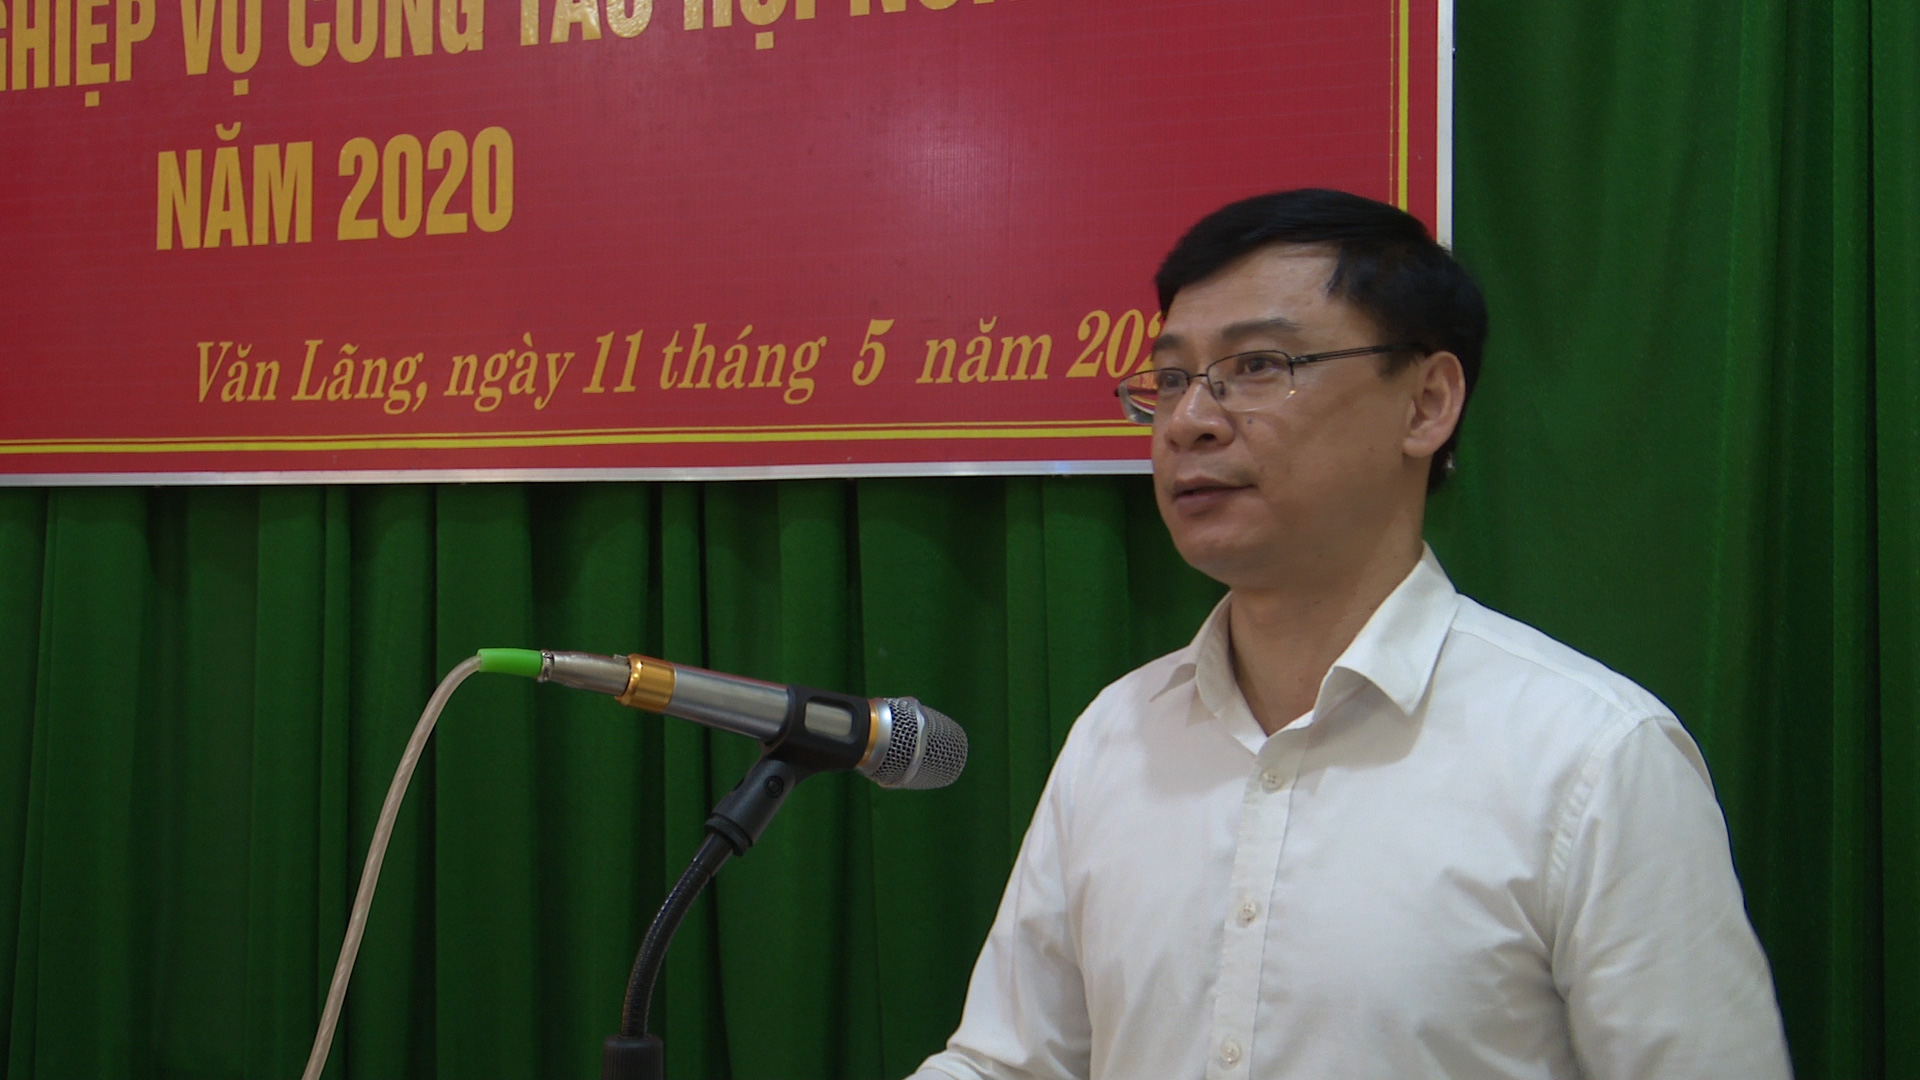 Lạng Sơn: Chú trọng tập huấn nghiệp vụ cho cán bộ Hội Nông dân các cấp - Ảnh 2.